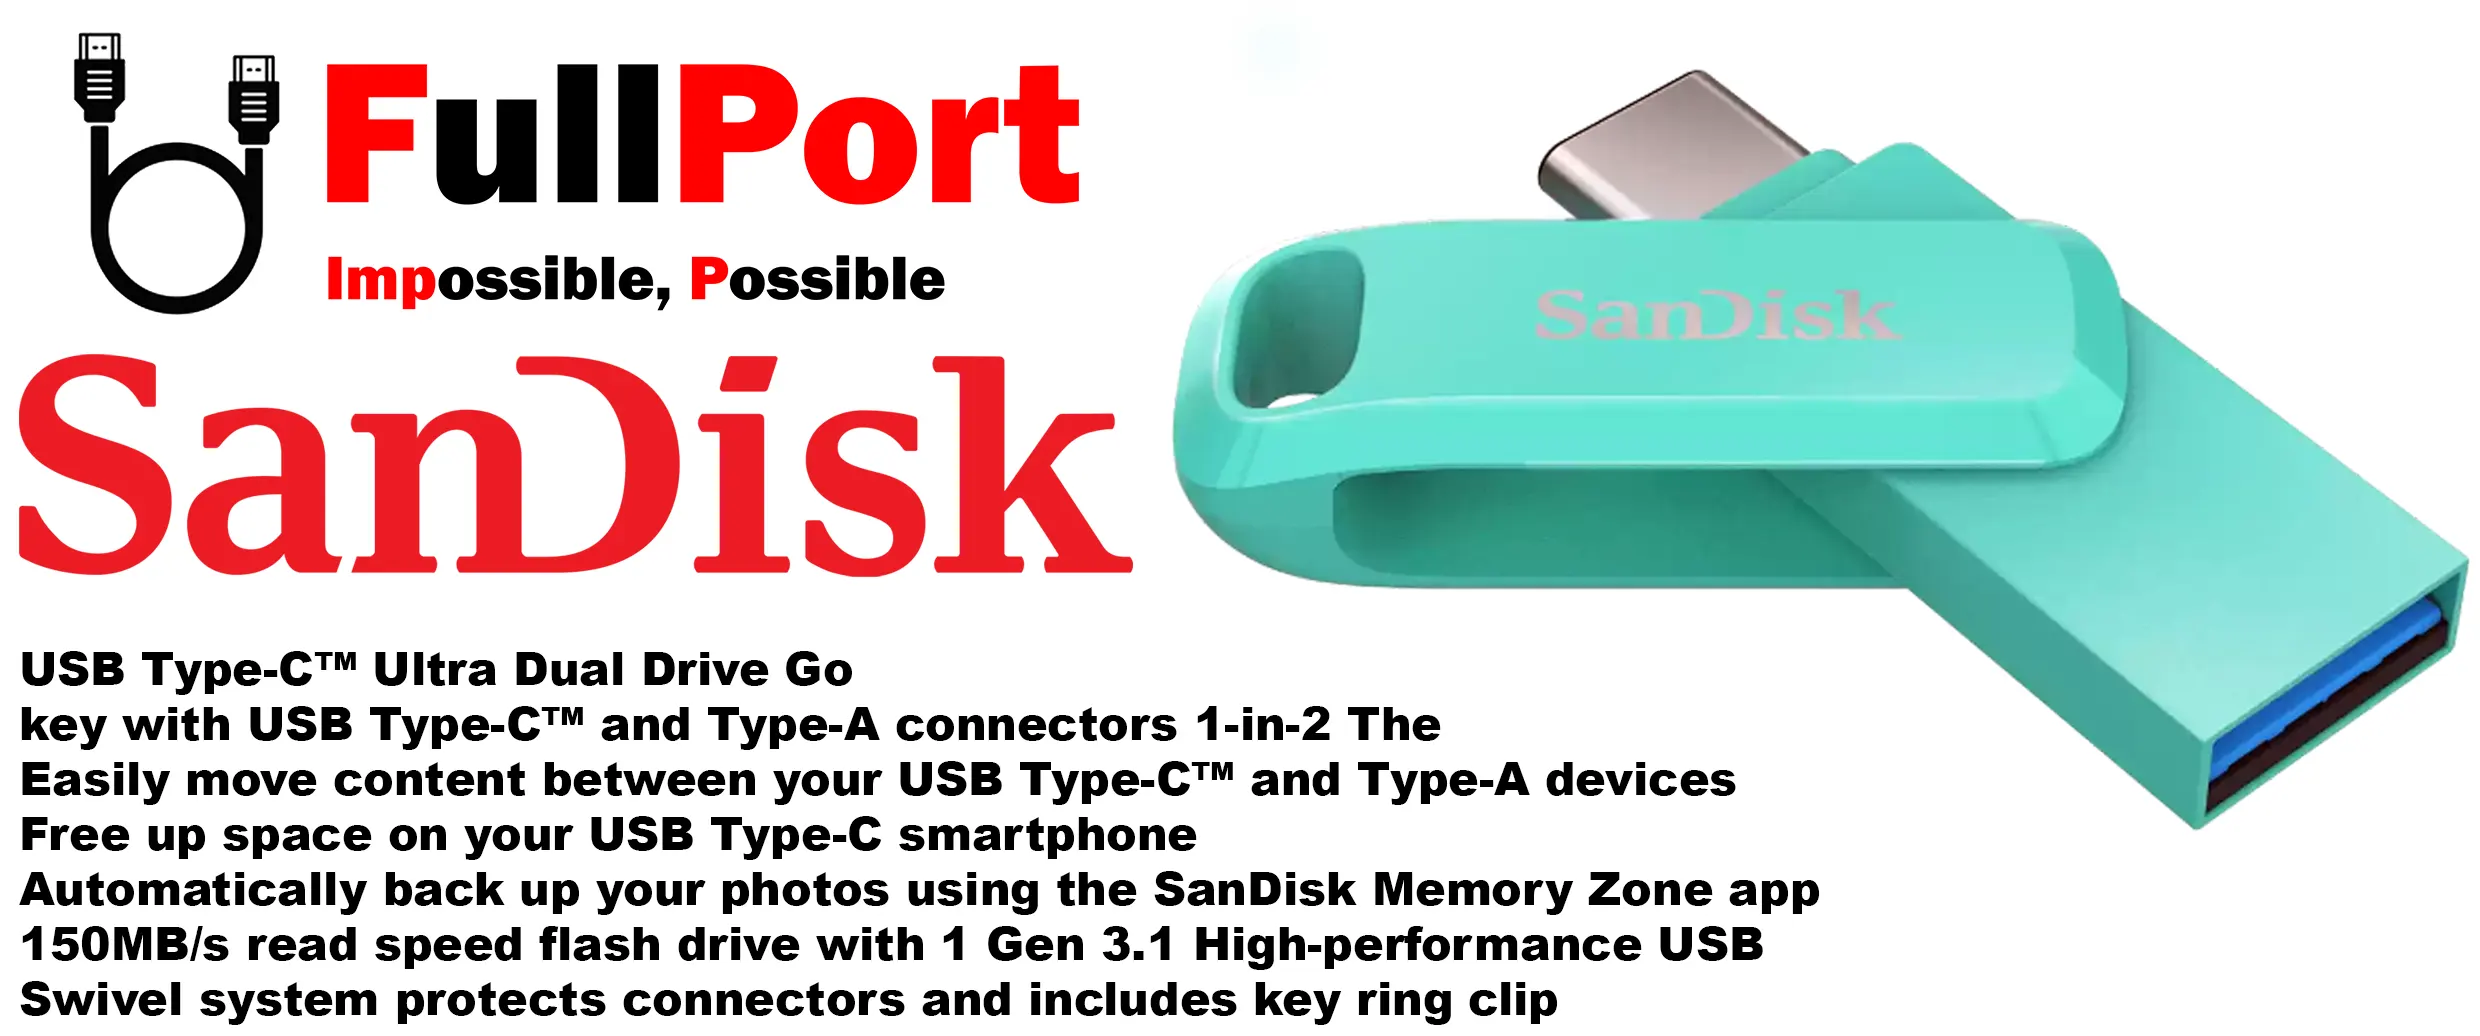 خرید اینترنتی فلش سن دیسک مدل SANDISK SDDDC3 Ultra Dual Drive GO OTG 2 In 1 Type C USB3.1 از فروشگاه اینترنتی فول پورت